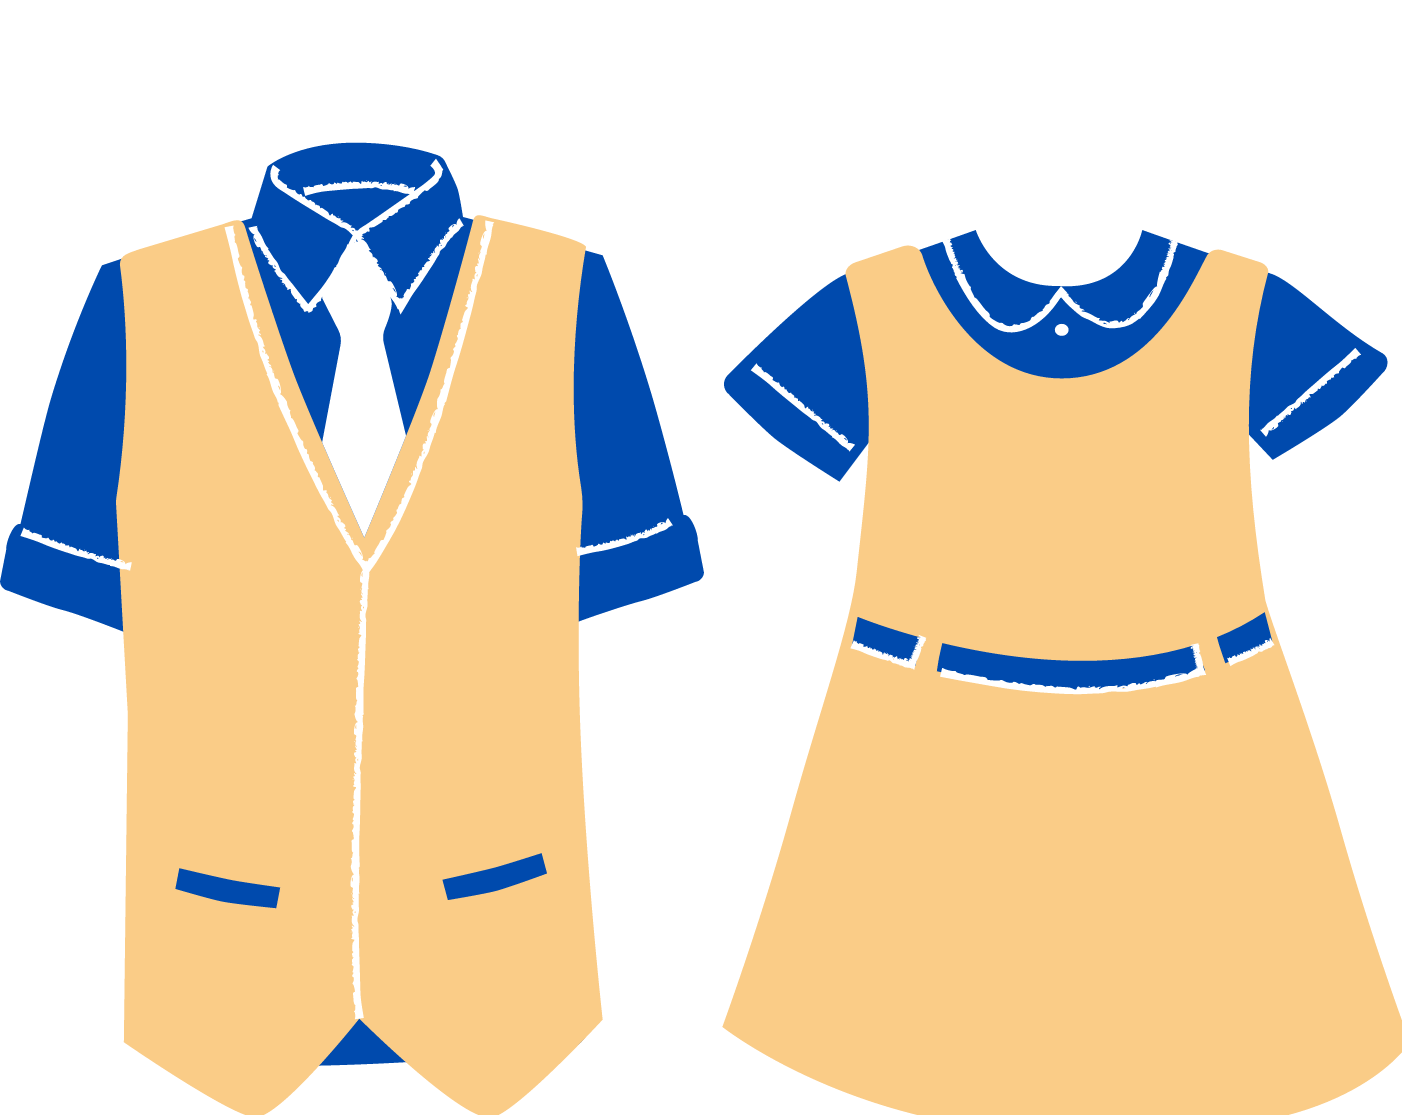  uniform